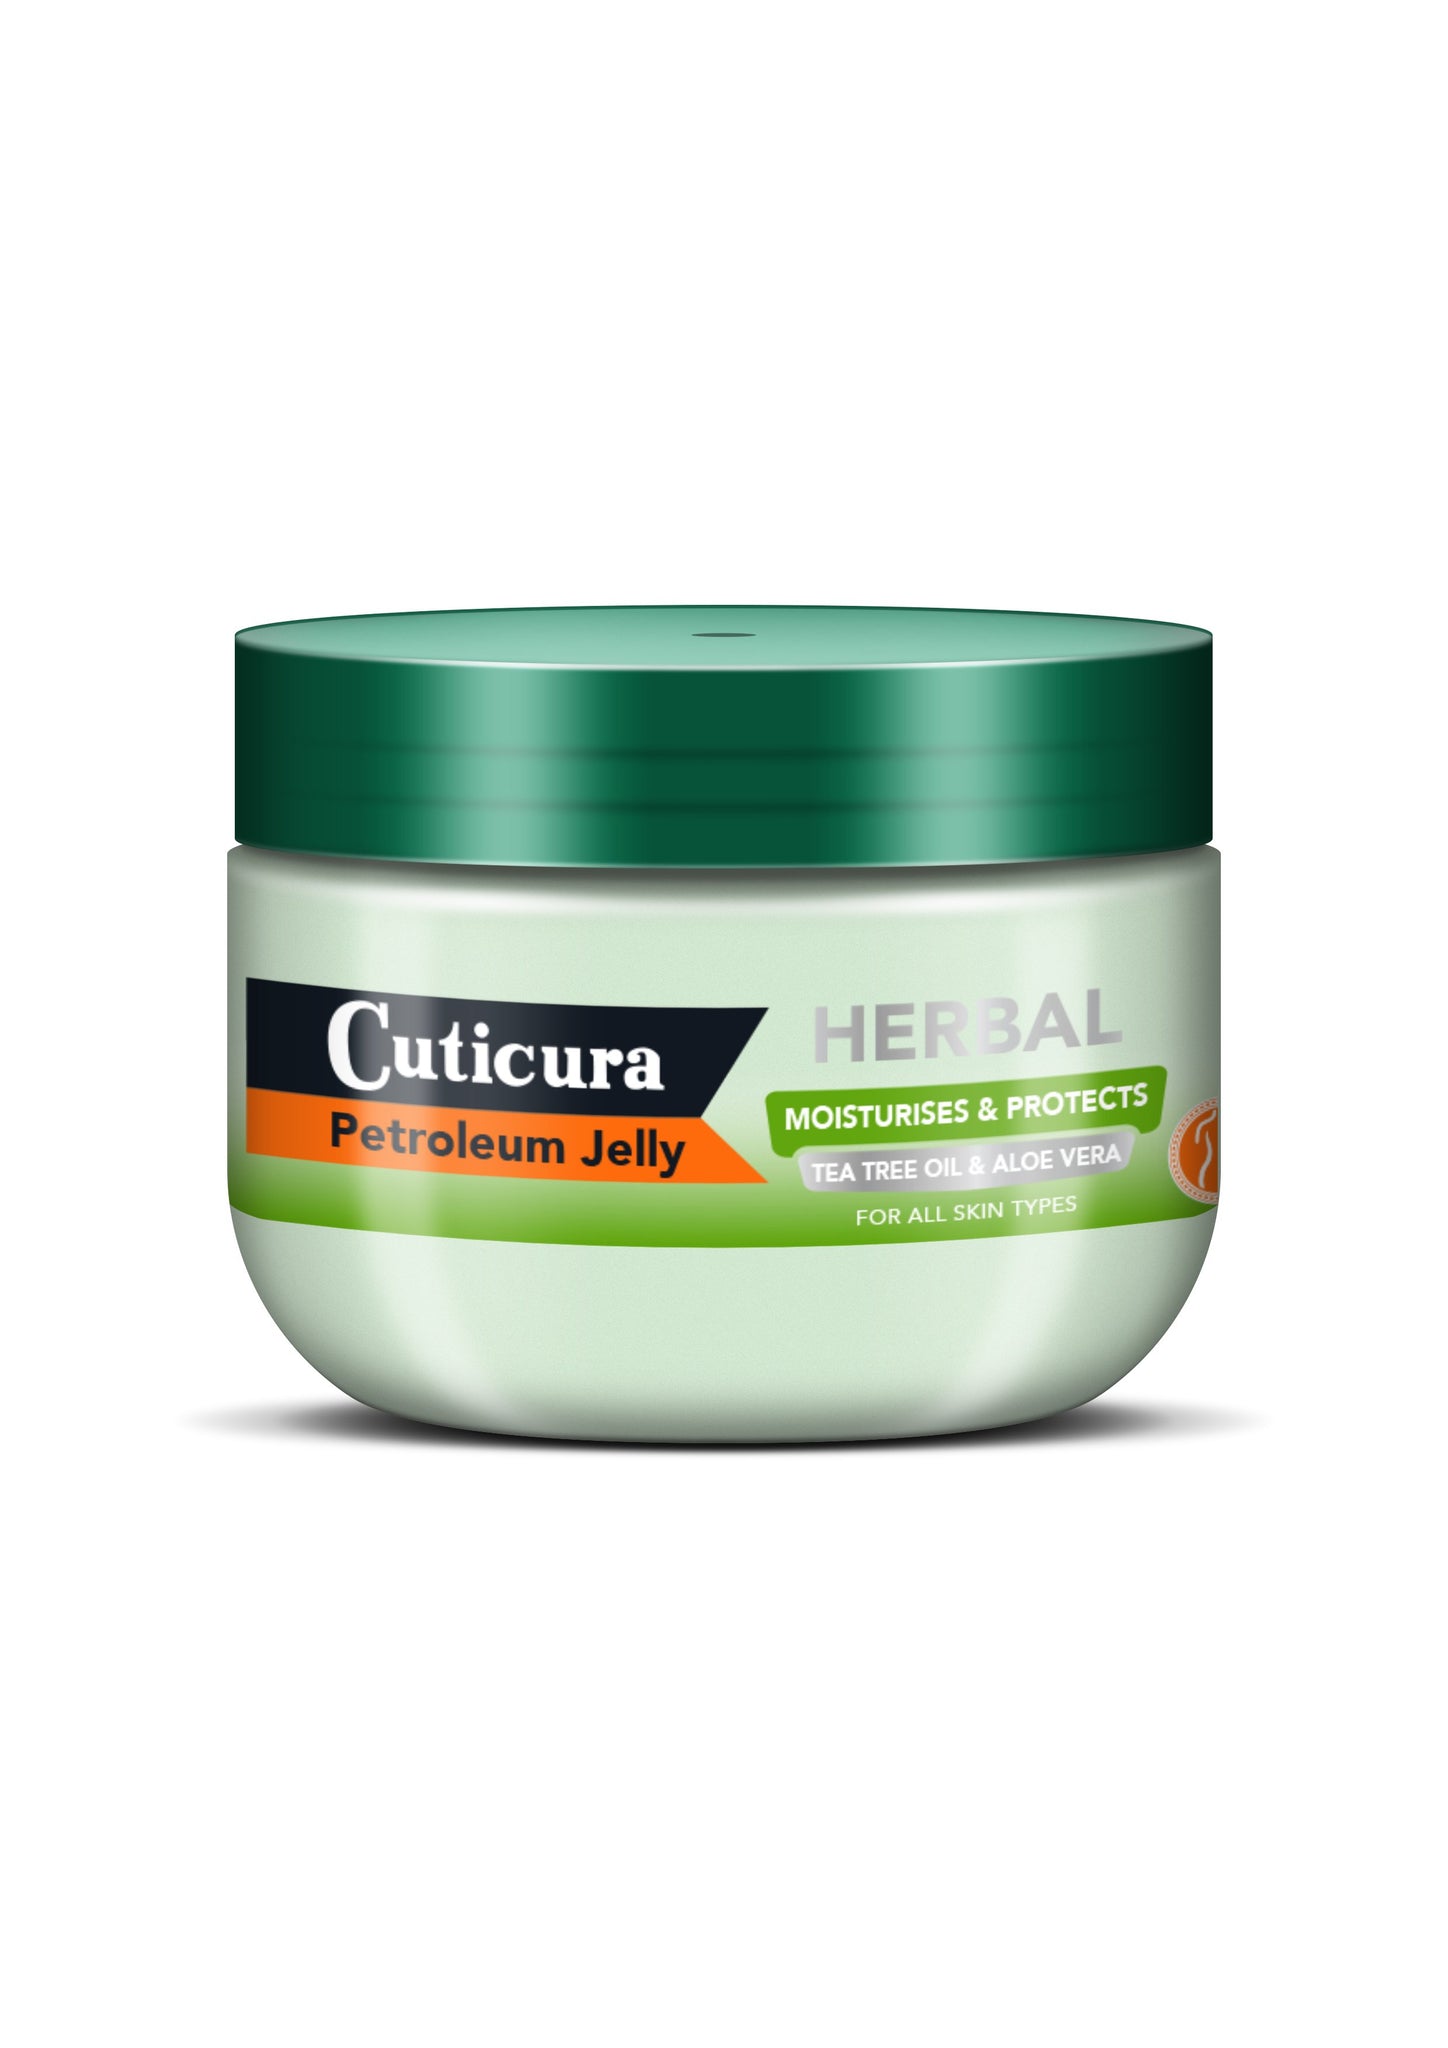 Cuticura - Herbal Petroleum Jelly - 250ml 24-Pack